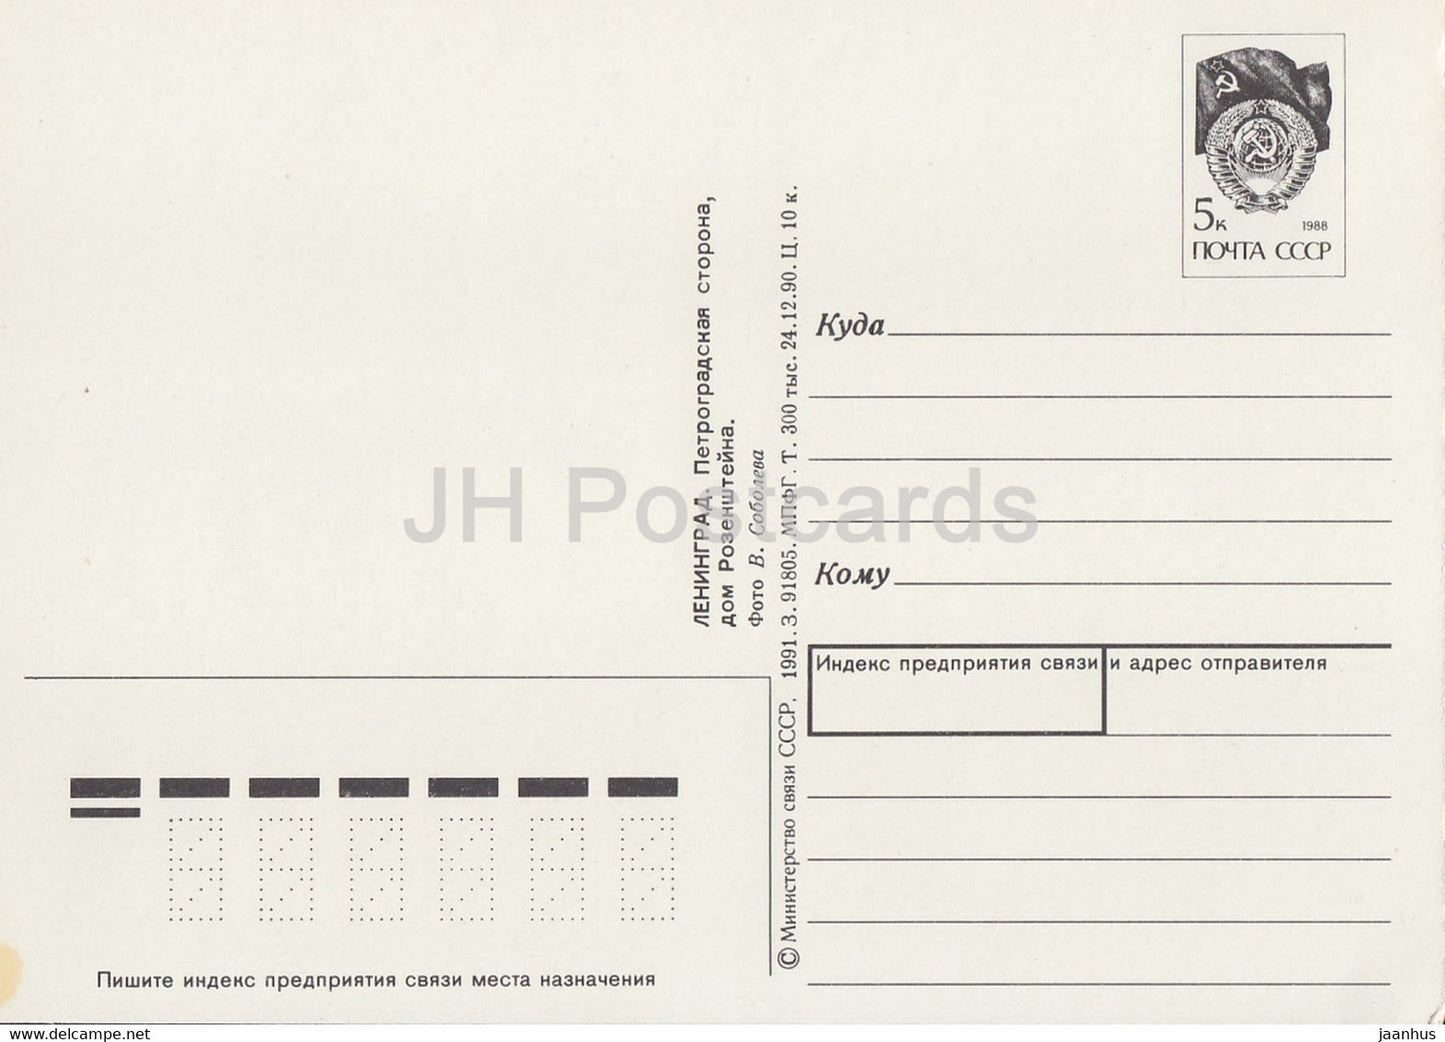 Leningrad - St Petersburg - Rosenstein House - Petrograd side - postal stationery - 1 - 1991 - Russia USSR - unused